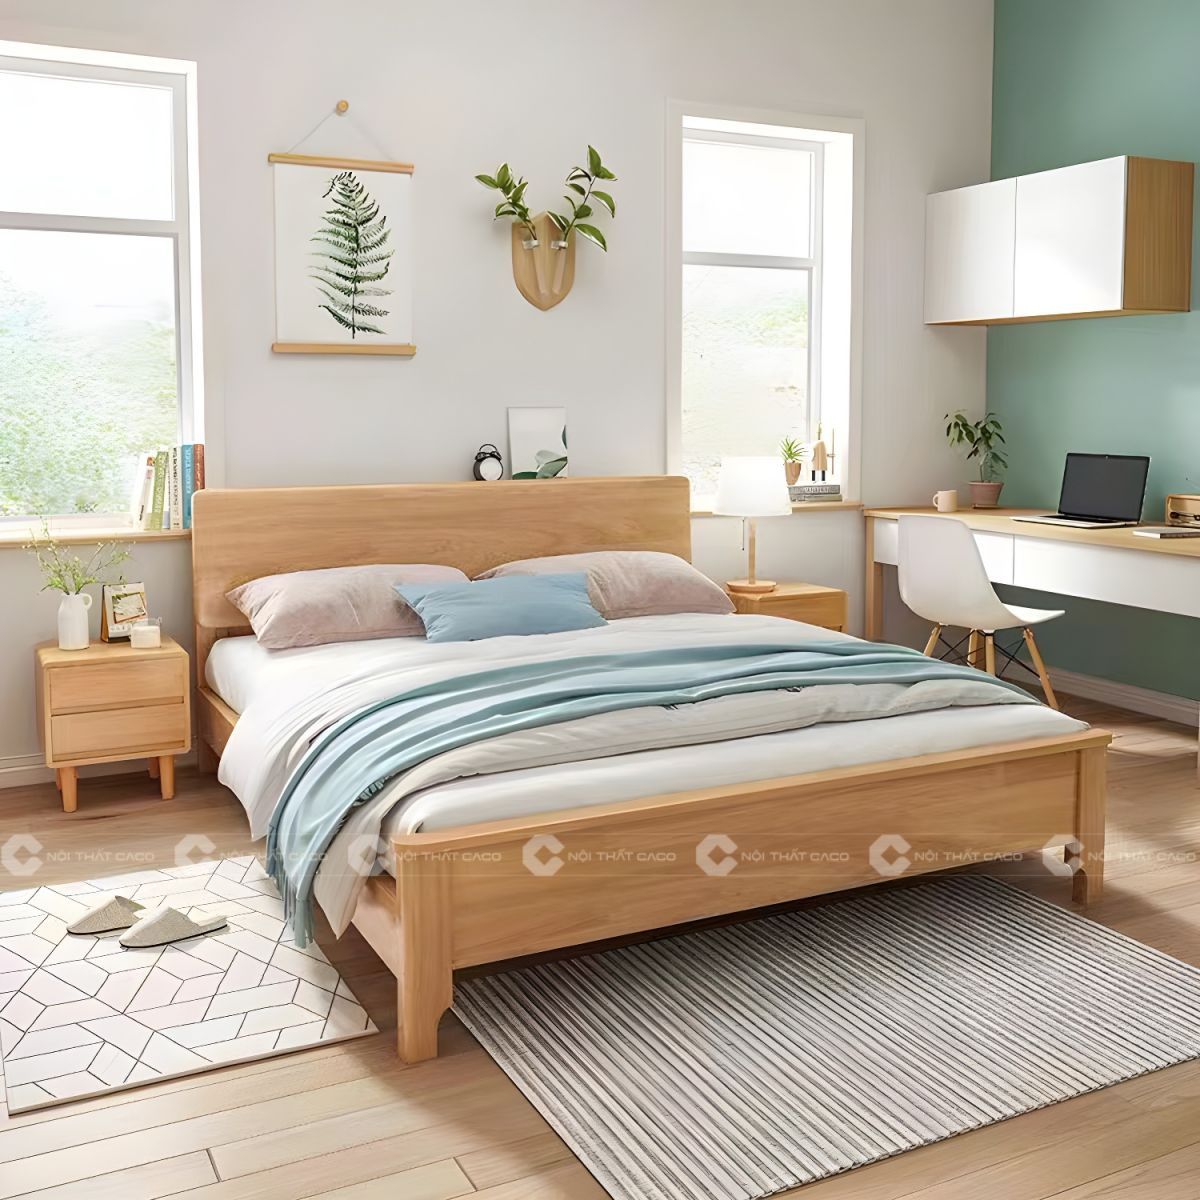 Giường ngủ gỗ tự nhiên bo tròn thanh lịch